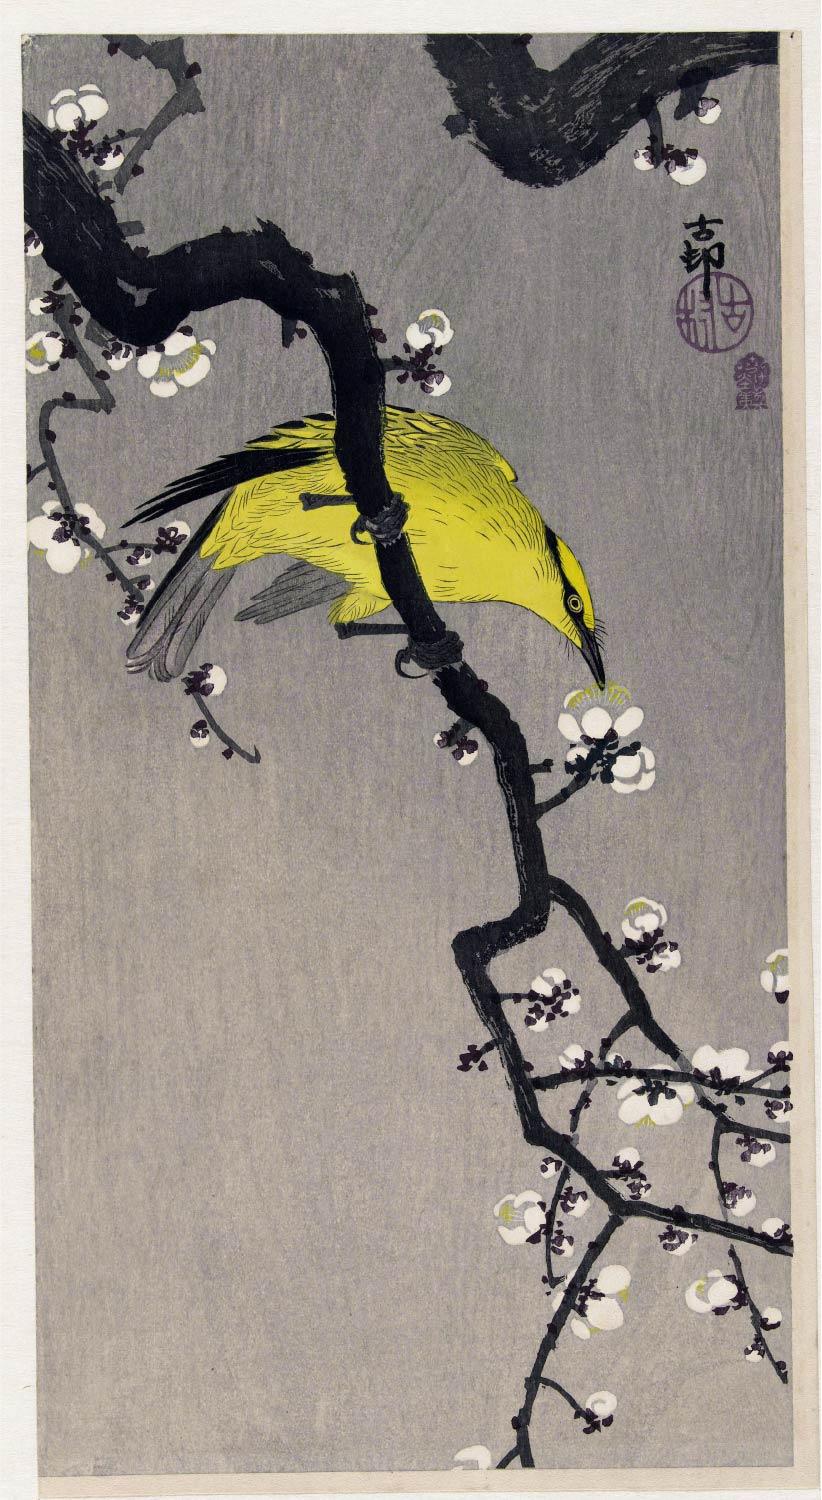 【無料壁紙】小原 古邨「梅に高麗鶯 (1900-1910)」 / Ohara Koson_Chinese oriole on plum blossom branch (1900-1910)